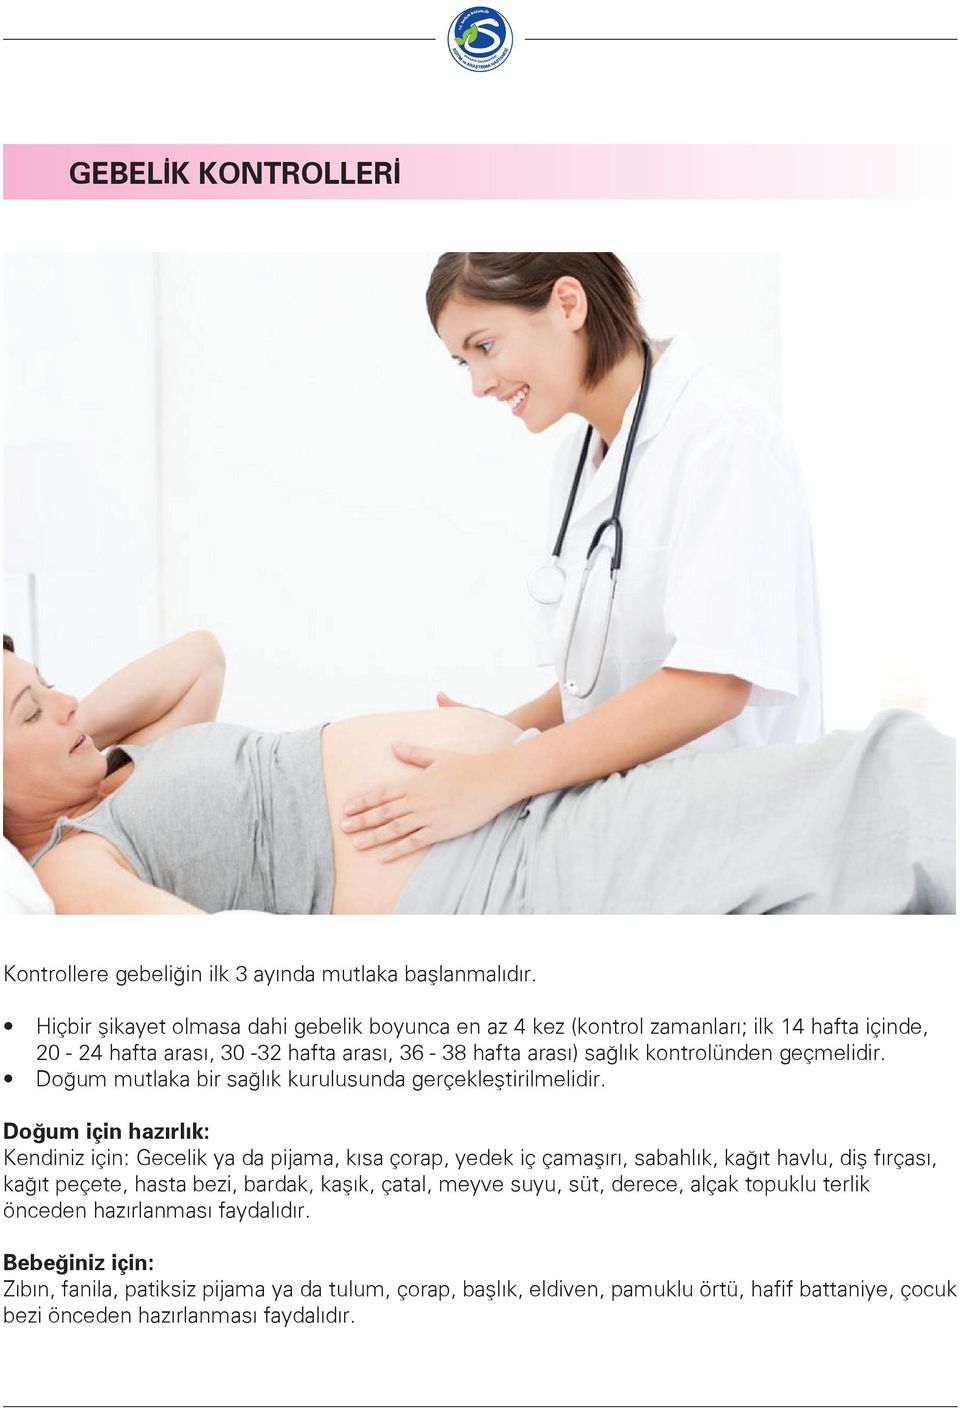 Doğum mutlaka bir sağlık kurulusunda gerçekleştirilmelidir.